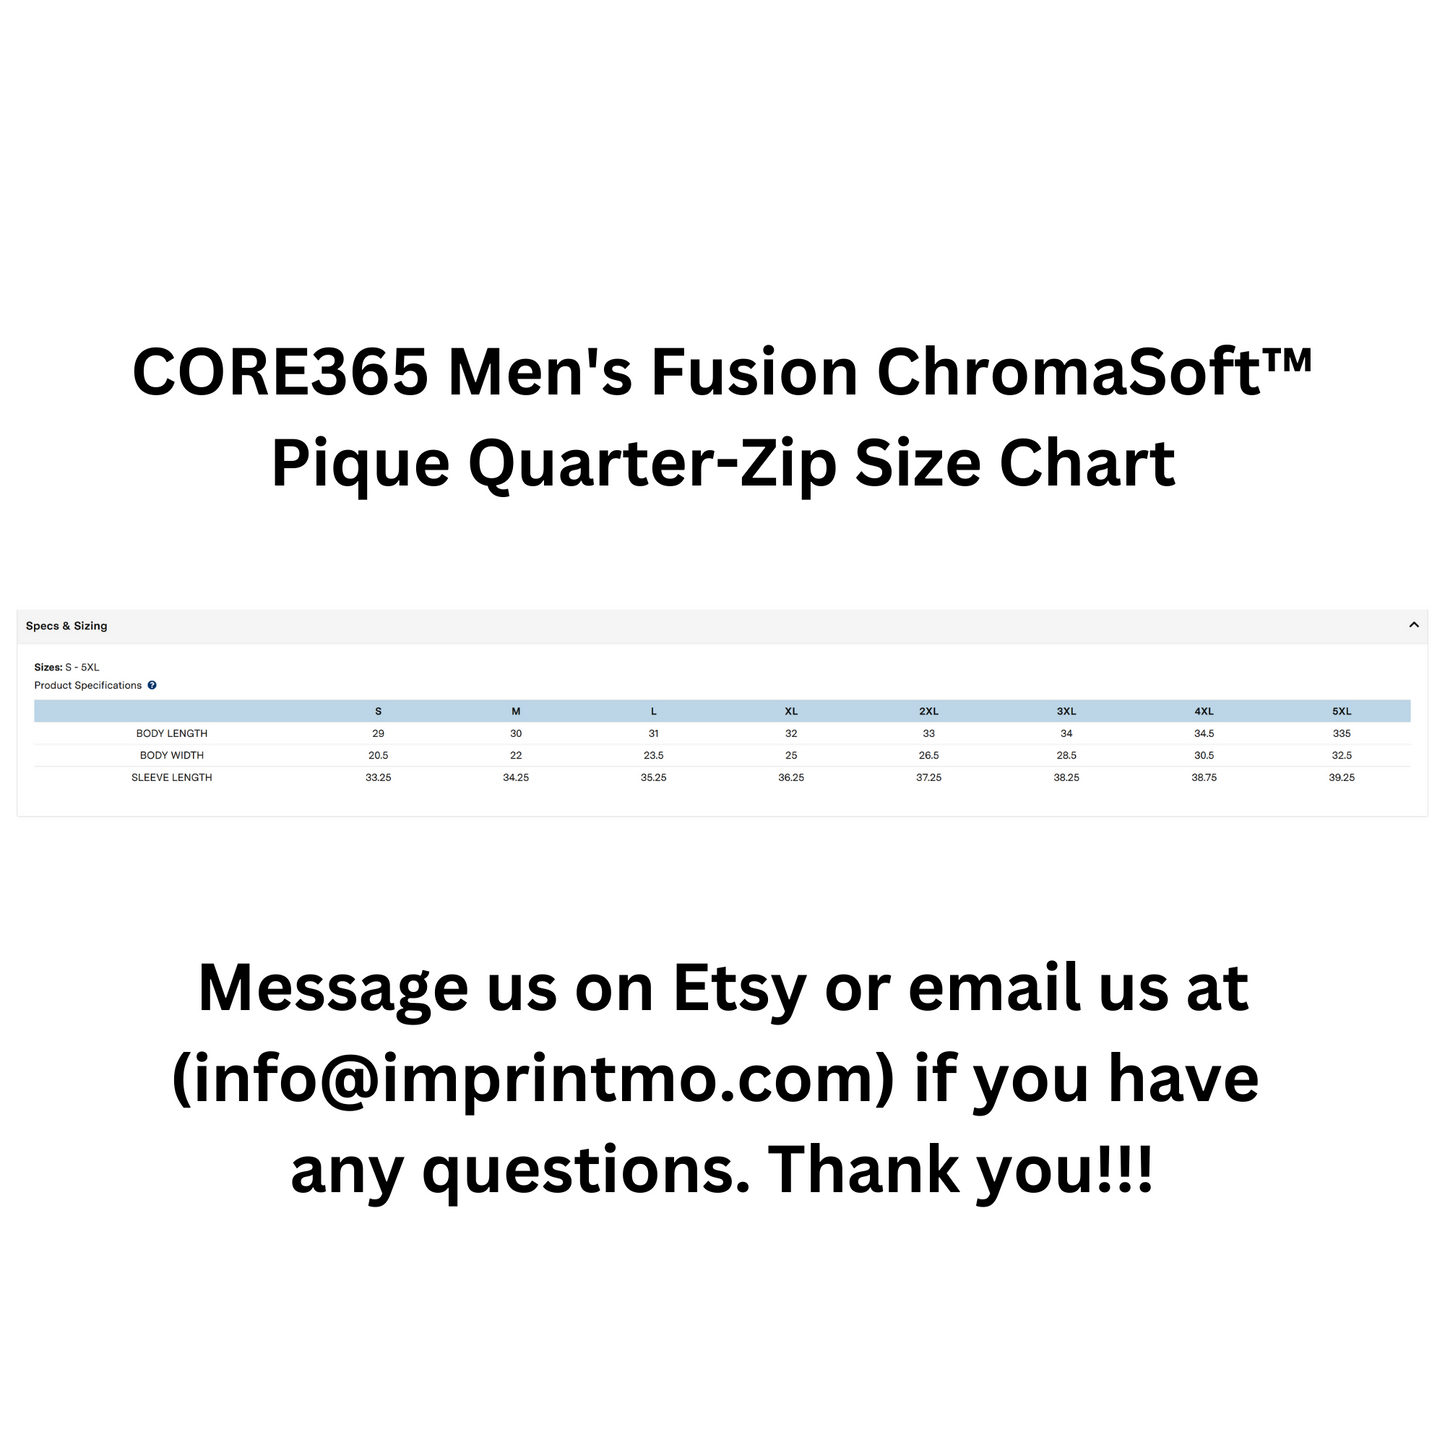 CORE365 Men's Fusion ChromaSoft™ Pique Quarter-Zip